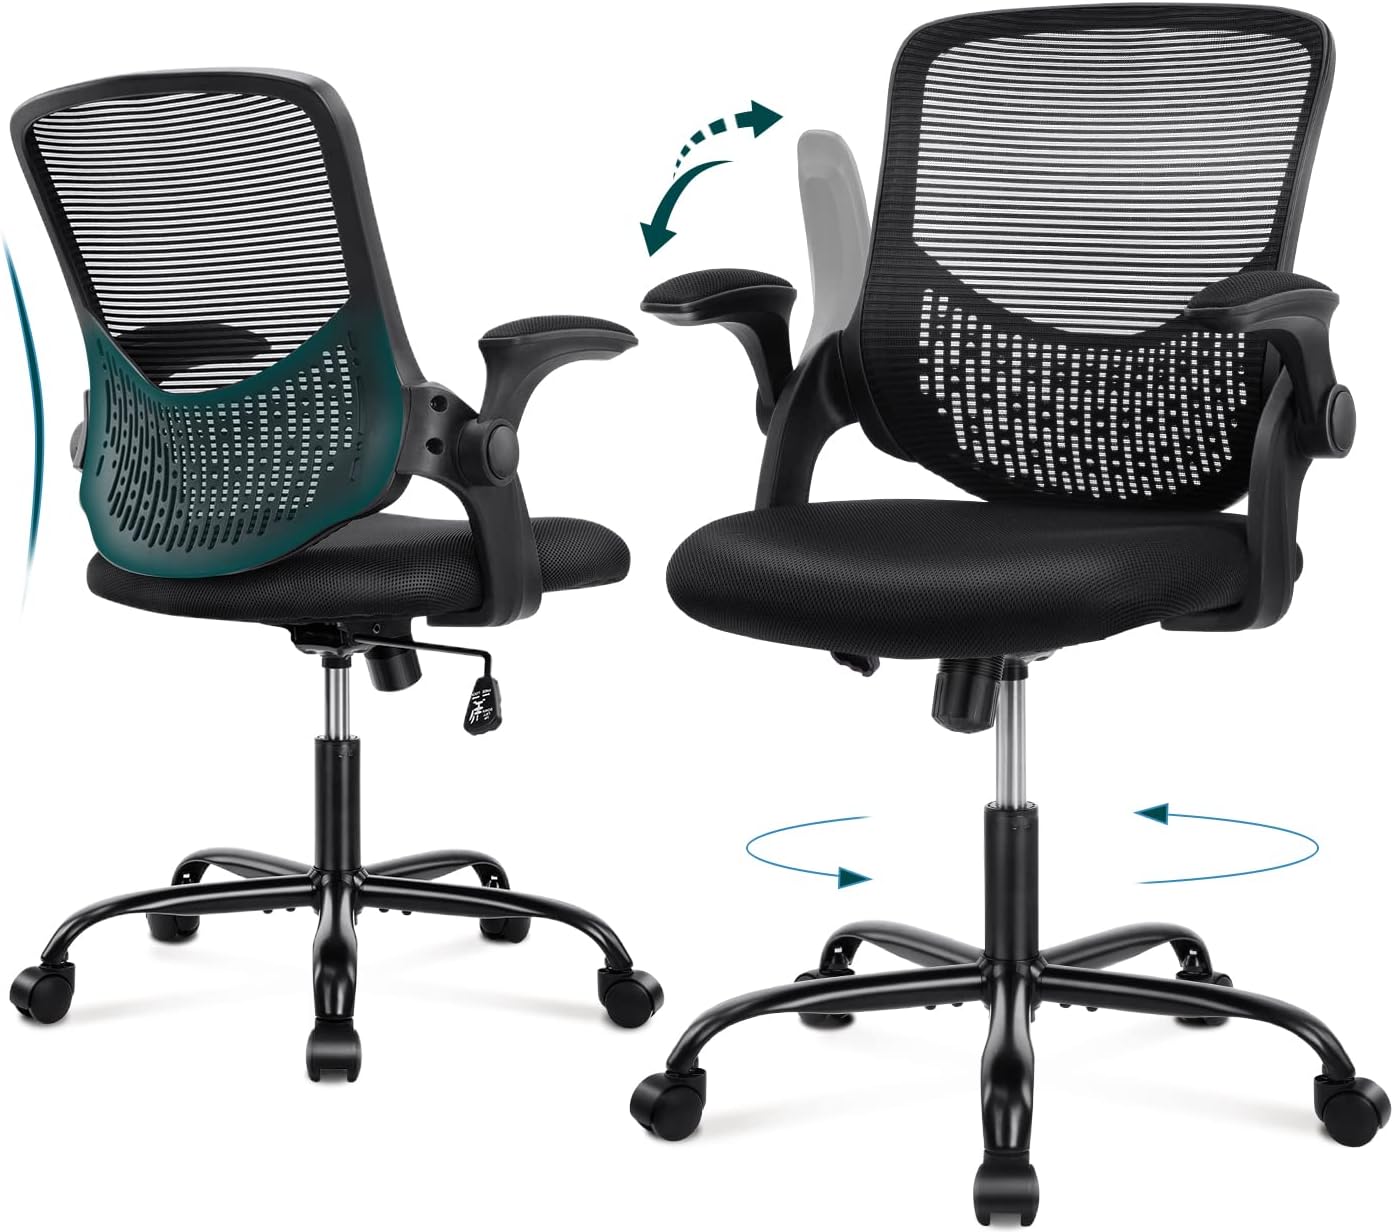 Características esenciales de una silla ergonómica para oficina